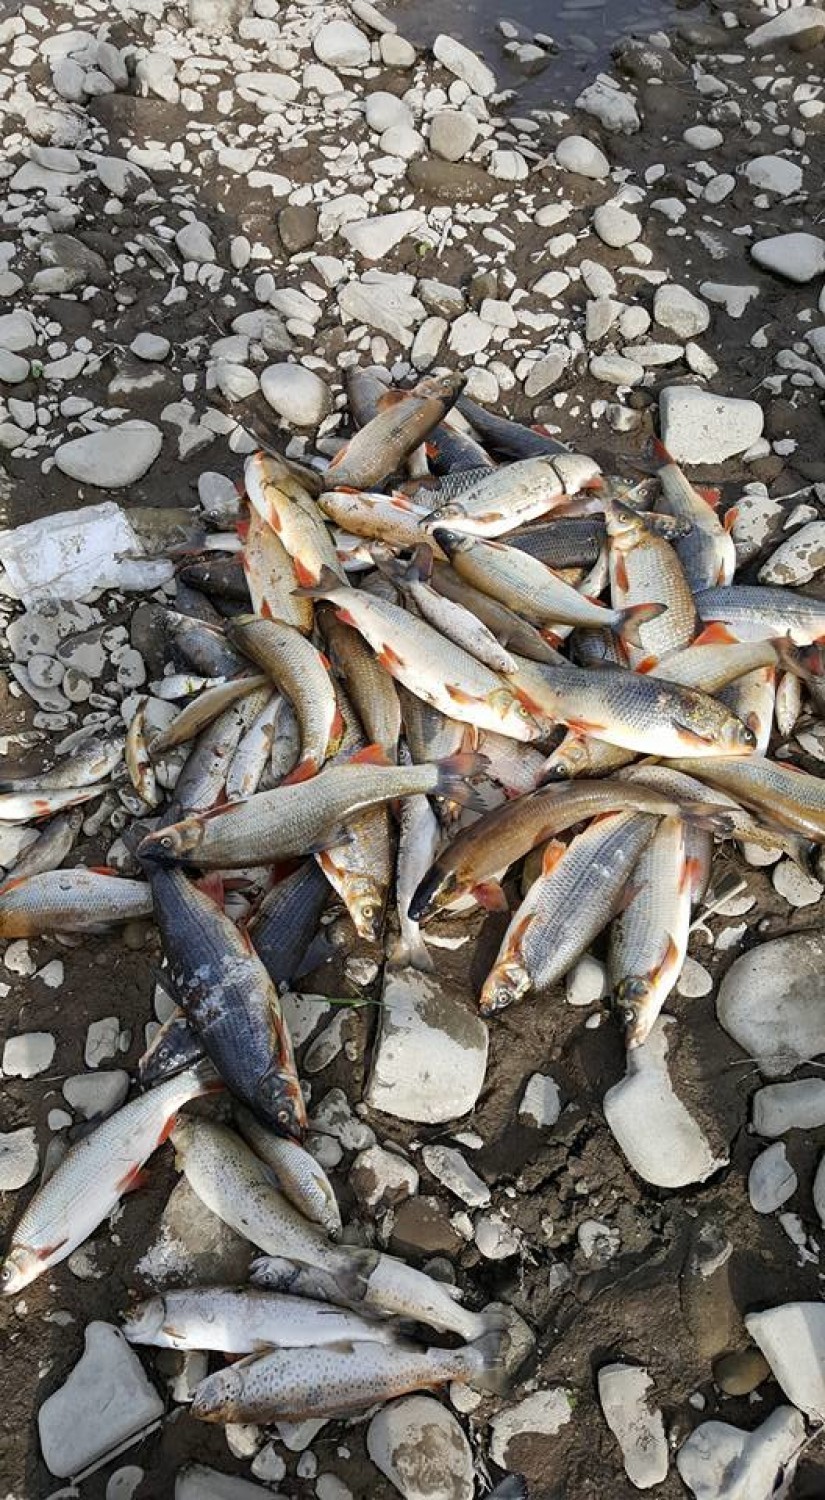 Wędkarze alarmują, że pożar w Żywcu zabił wiele ryb w Sole. Skażenie środowiska było faktem